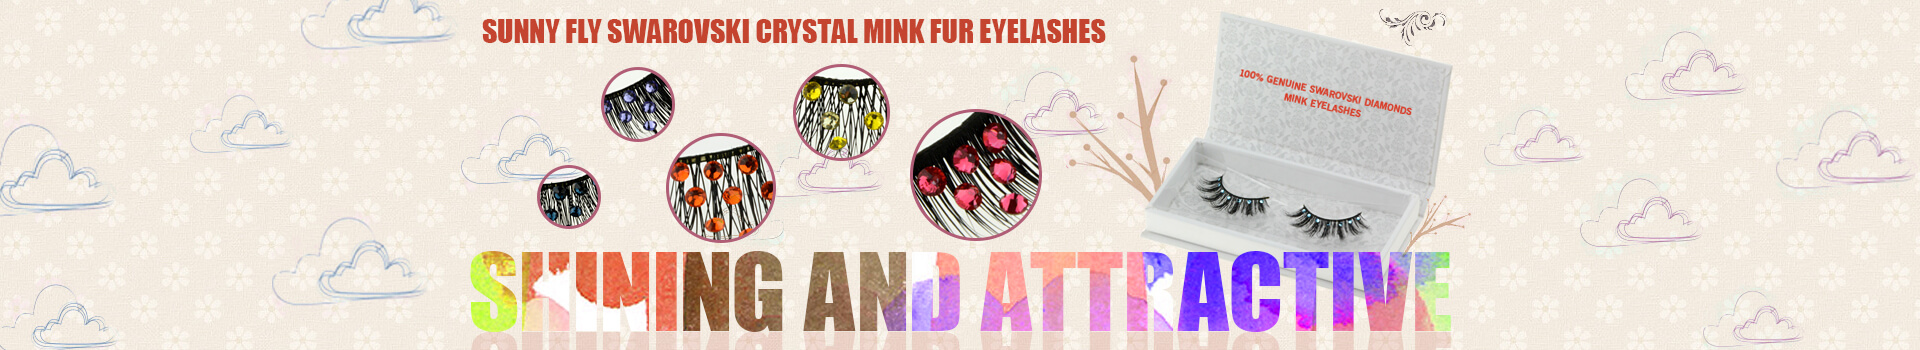 Swarovski Crystal Mink Fur Eyelashes MS16